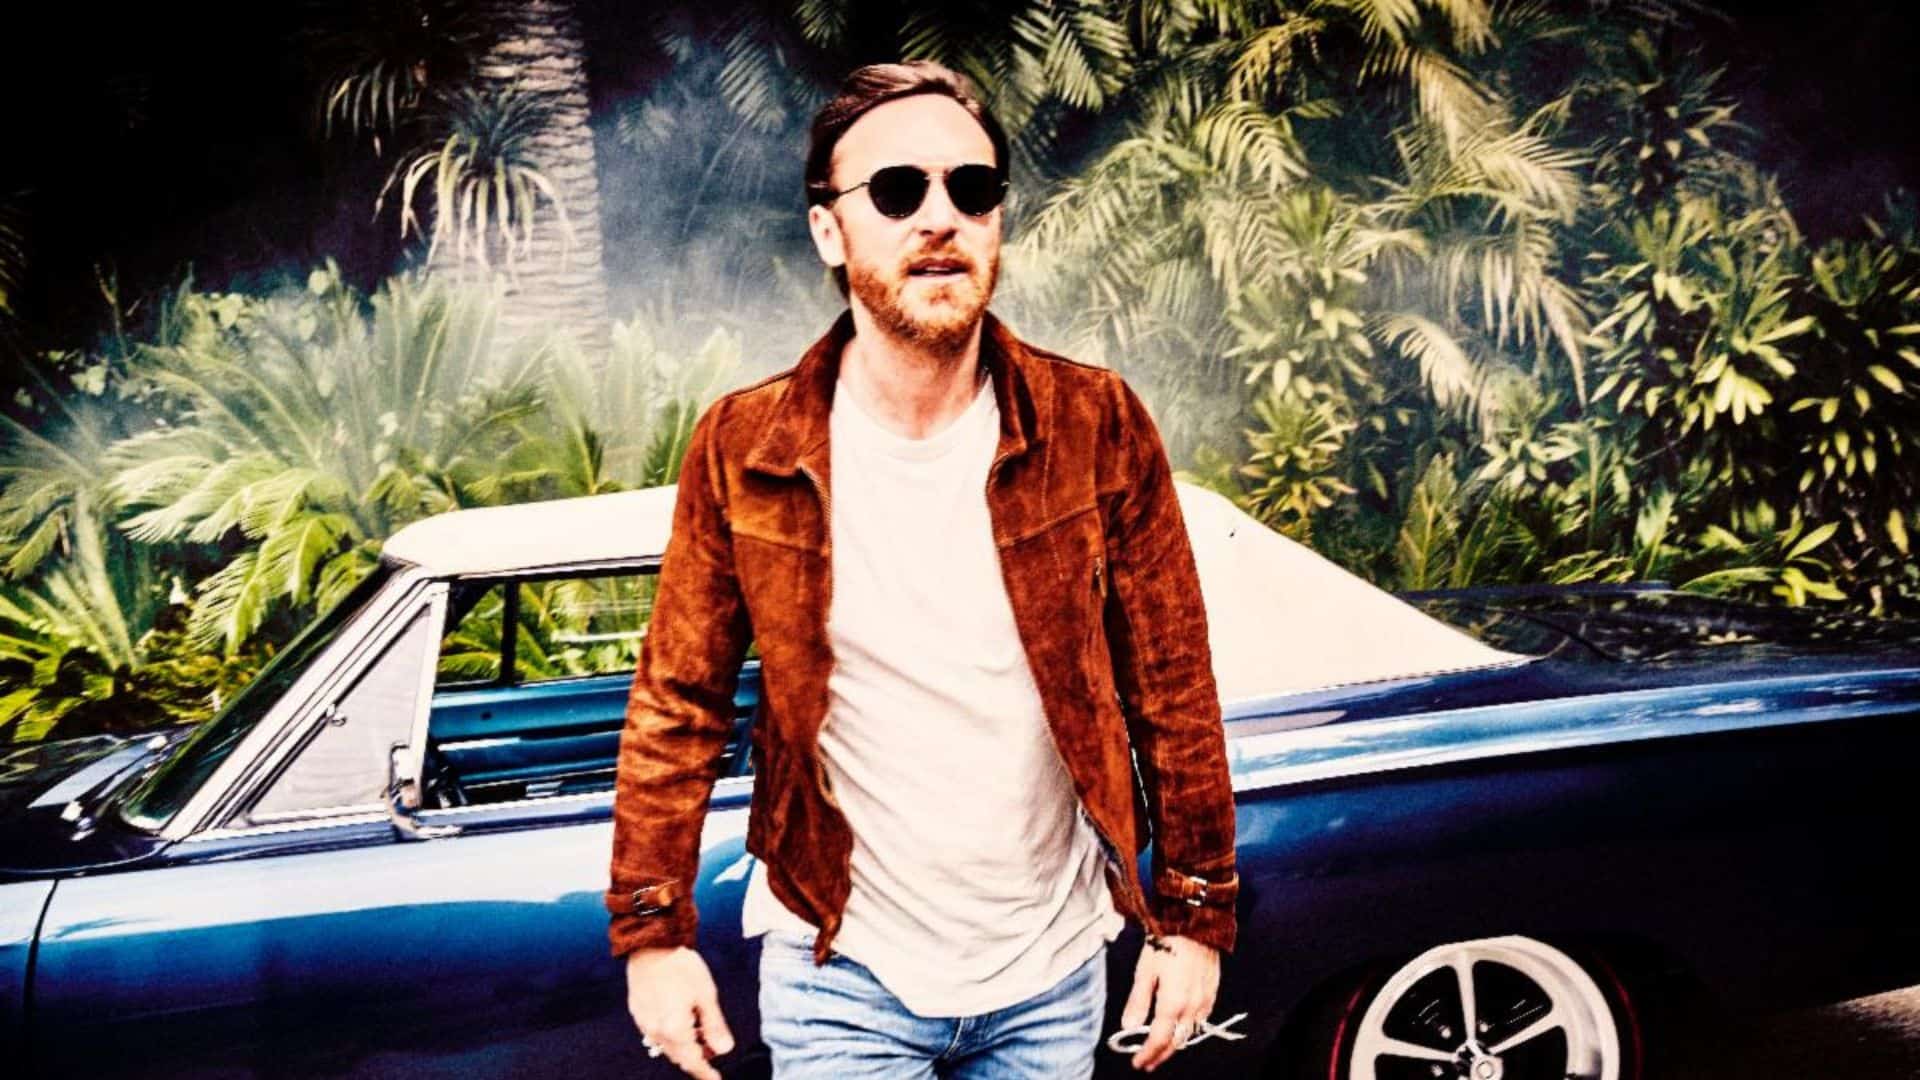 David Guetta unveils anniversary edition of his album ‘7’ with Bonus Tracks & Remixes